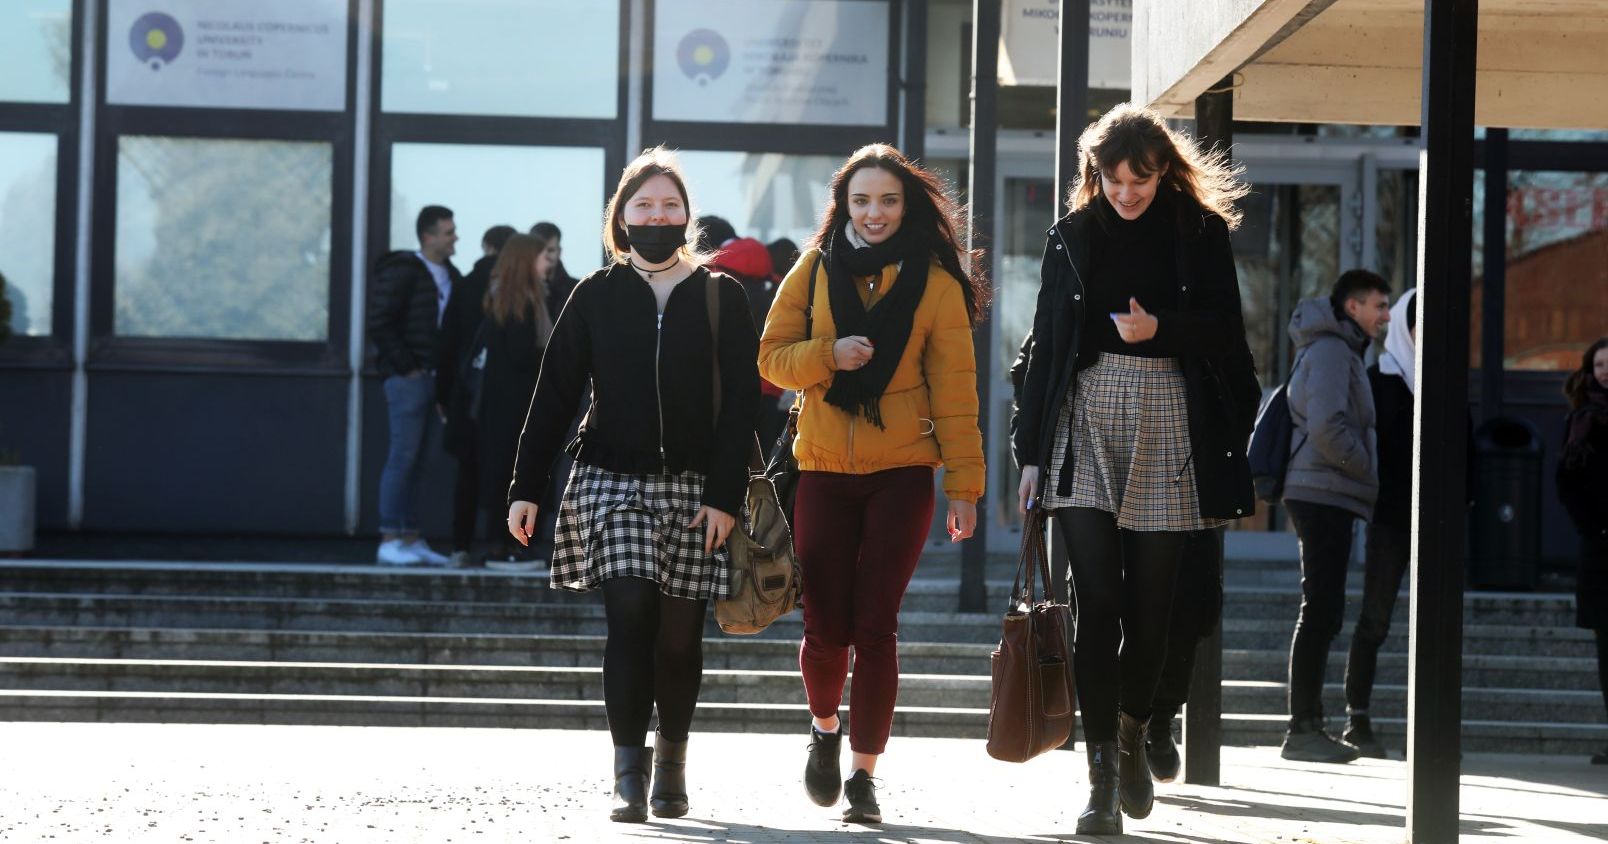  3 studentki idą chodnikiem w miasteczku akademickim